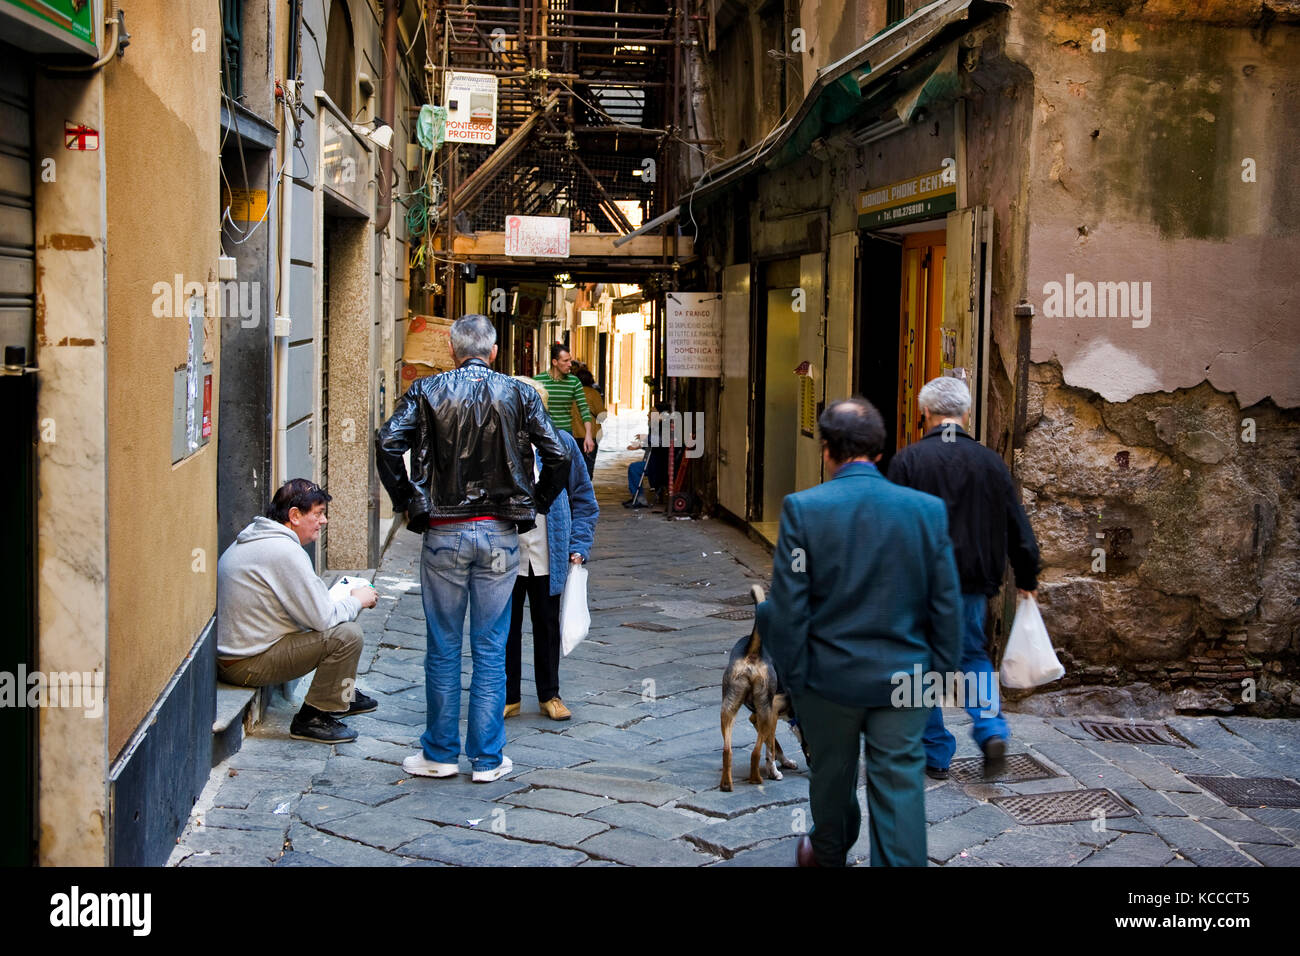 Caruggi, vieille ville, Gênes, Italie Banque D'Images